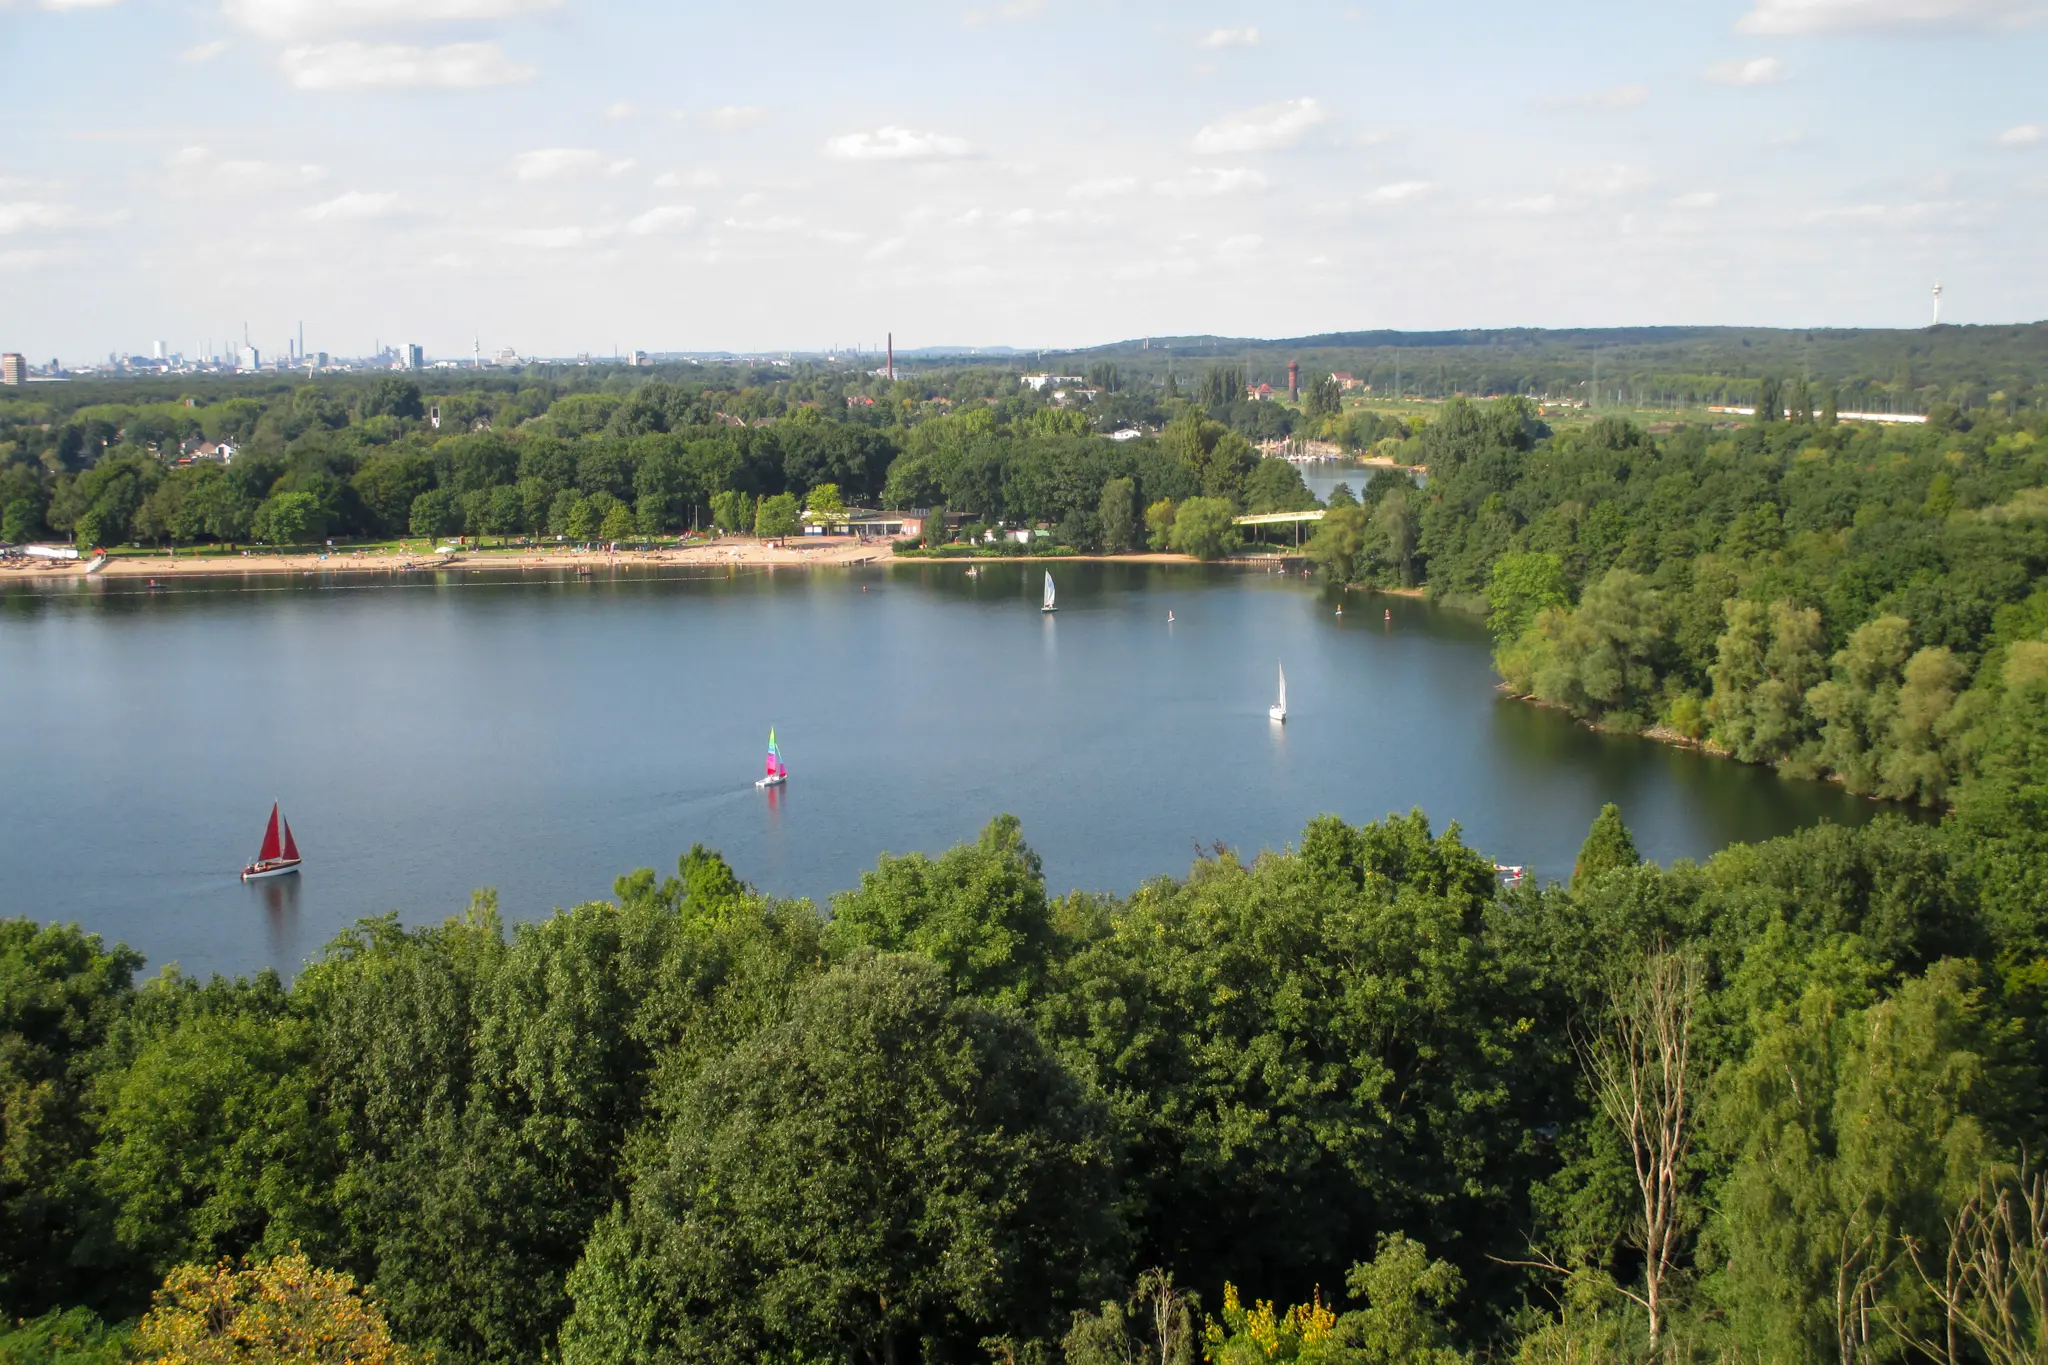 Die Sechs-Seen-Platte ist das Badesee-Gebiet in NRW